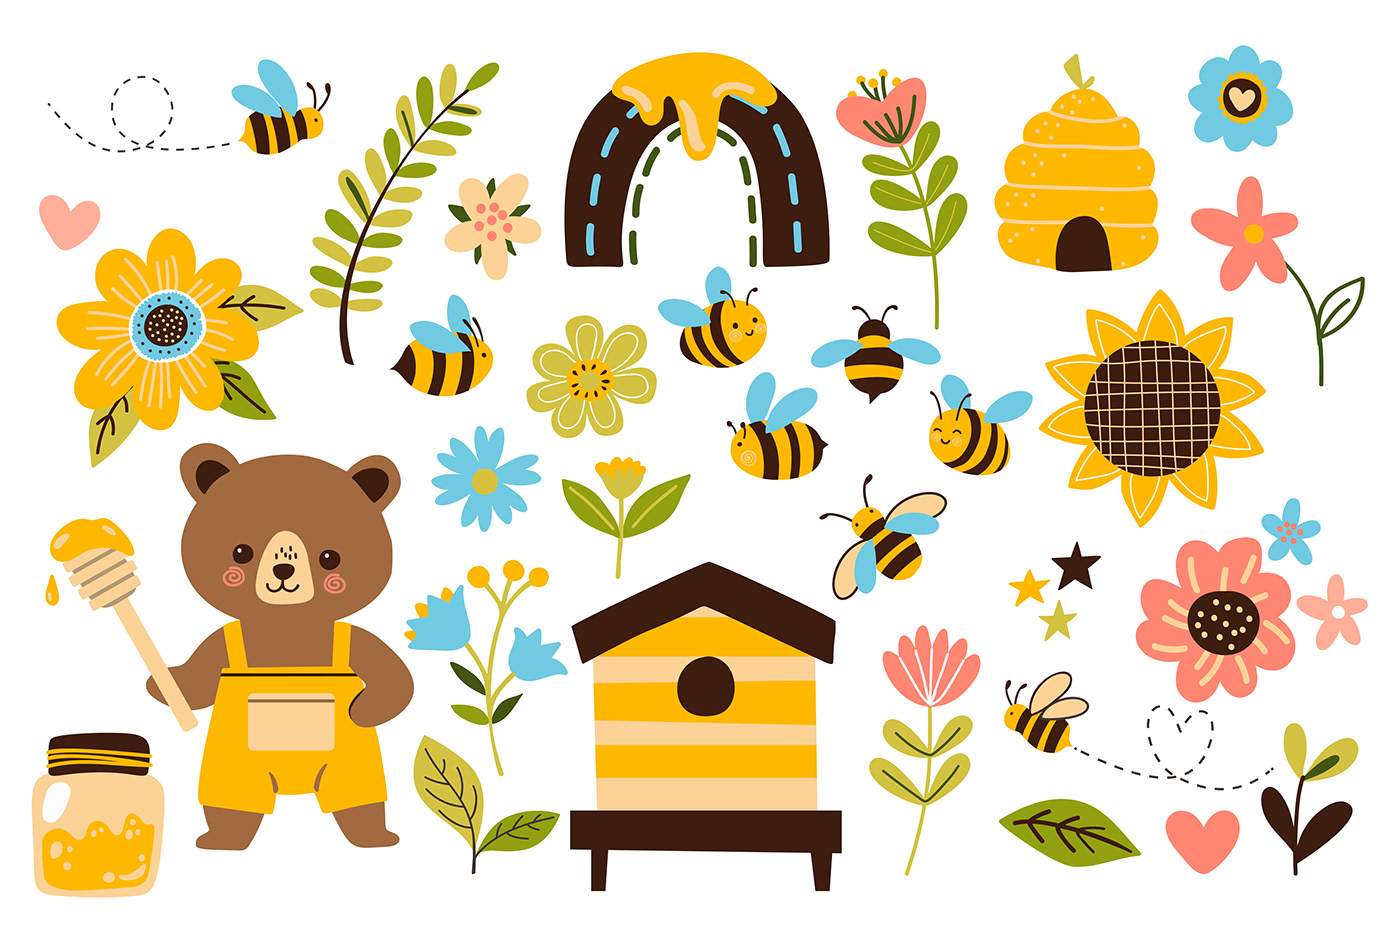 cartoon digital illustration Character design  children illustration seamless pattern flat illustration bees honey bear Cartoon vector art